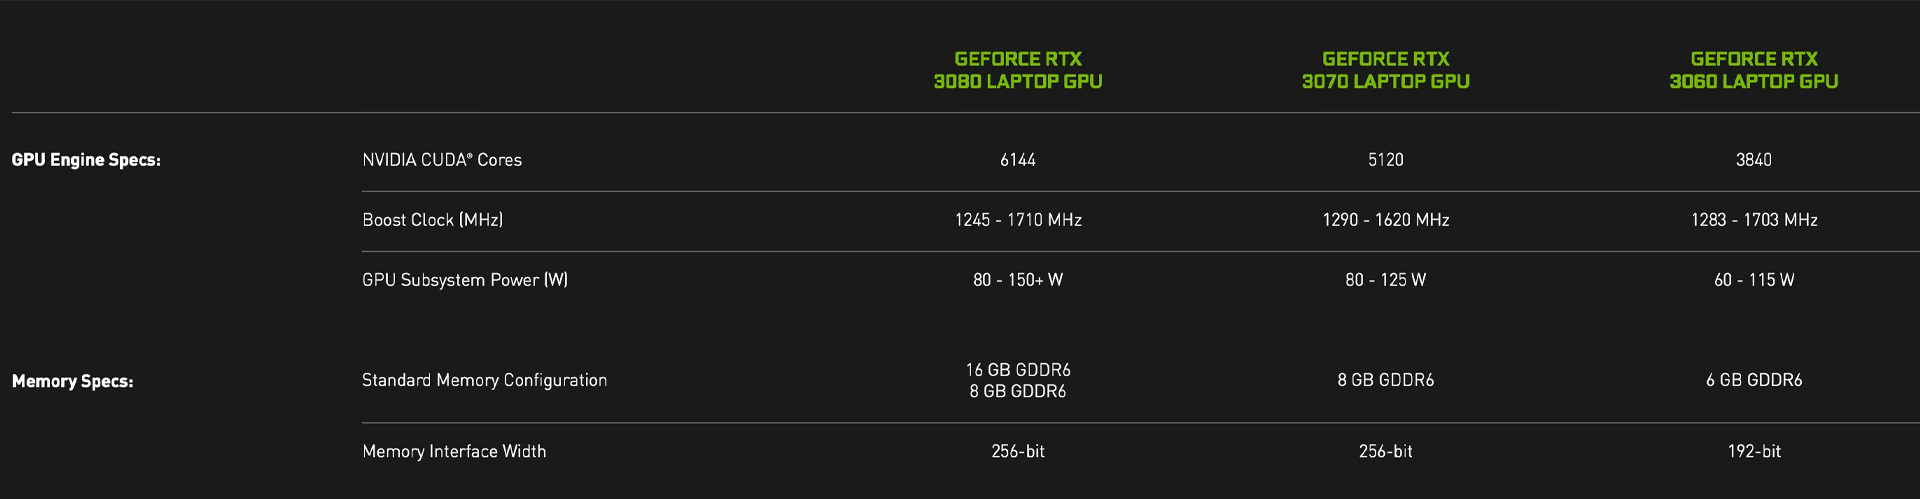 مشخصات پردازنده گرافیکی RTX 3000 لپ تاپ انویدیا در سایت رسمی Nvidia